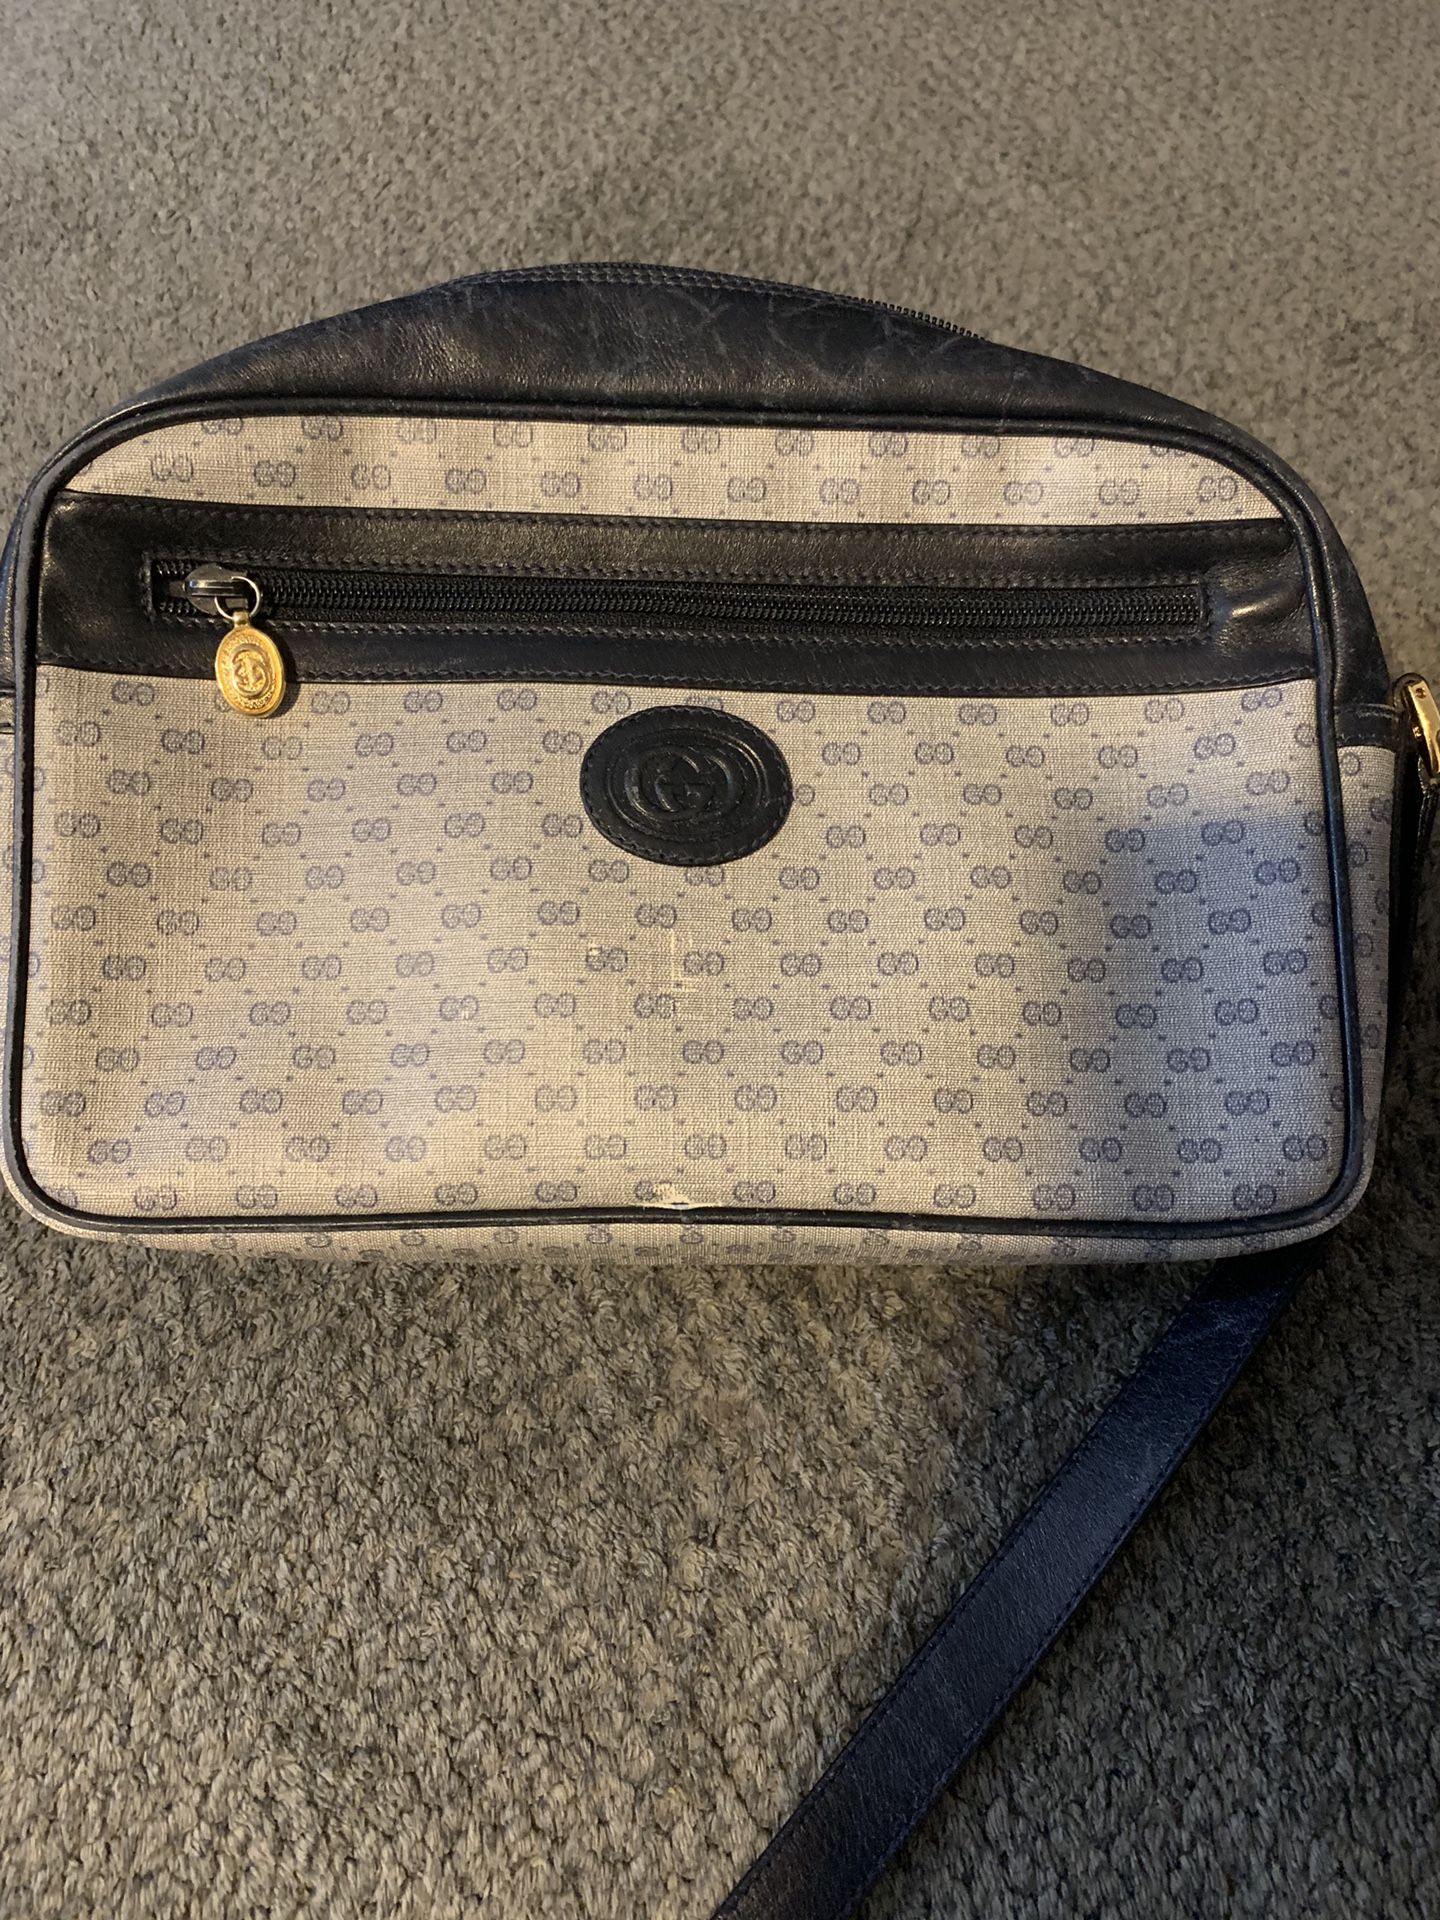 Gucci crossbody purse grey